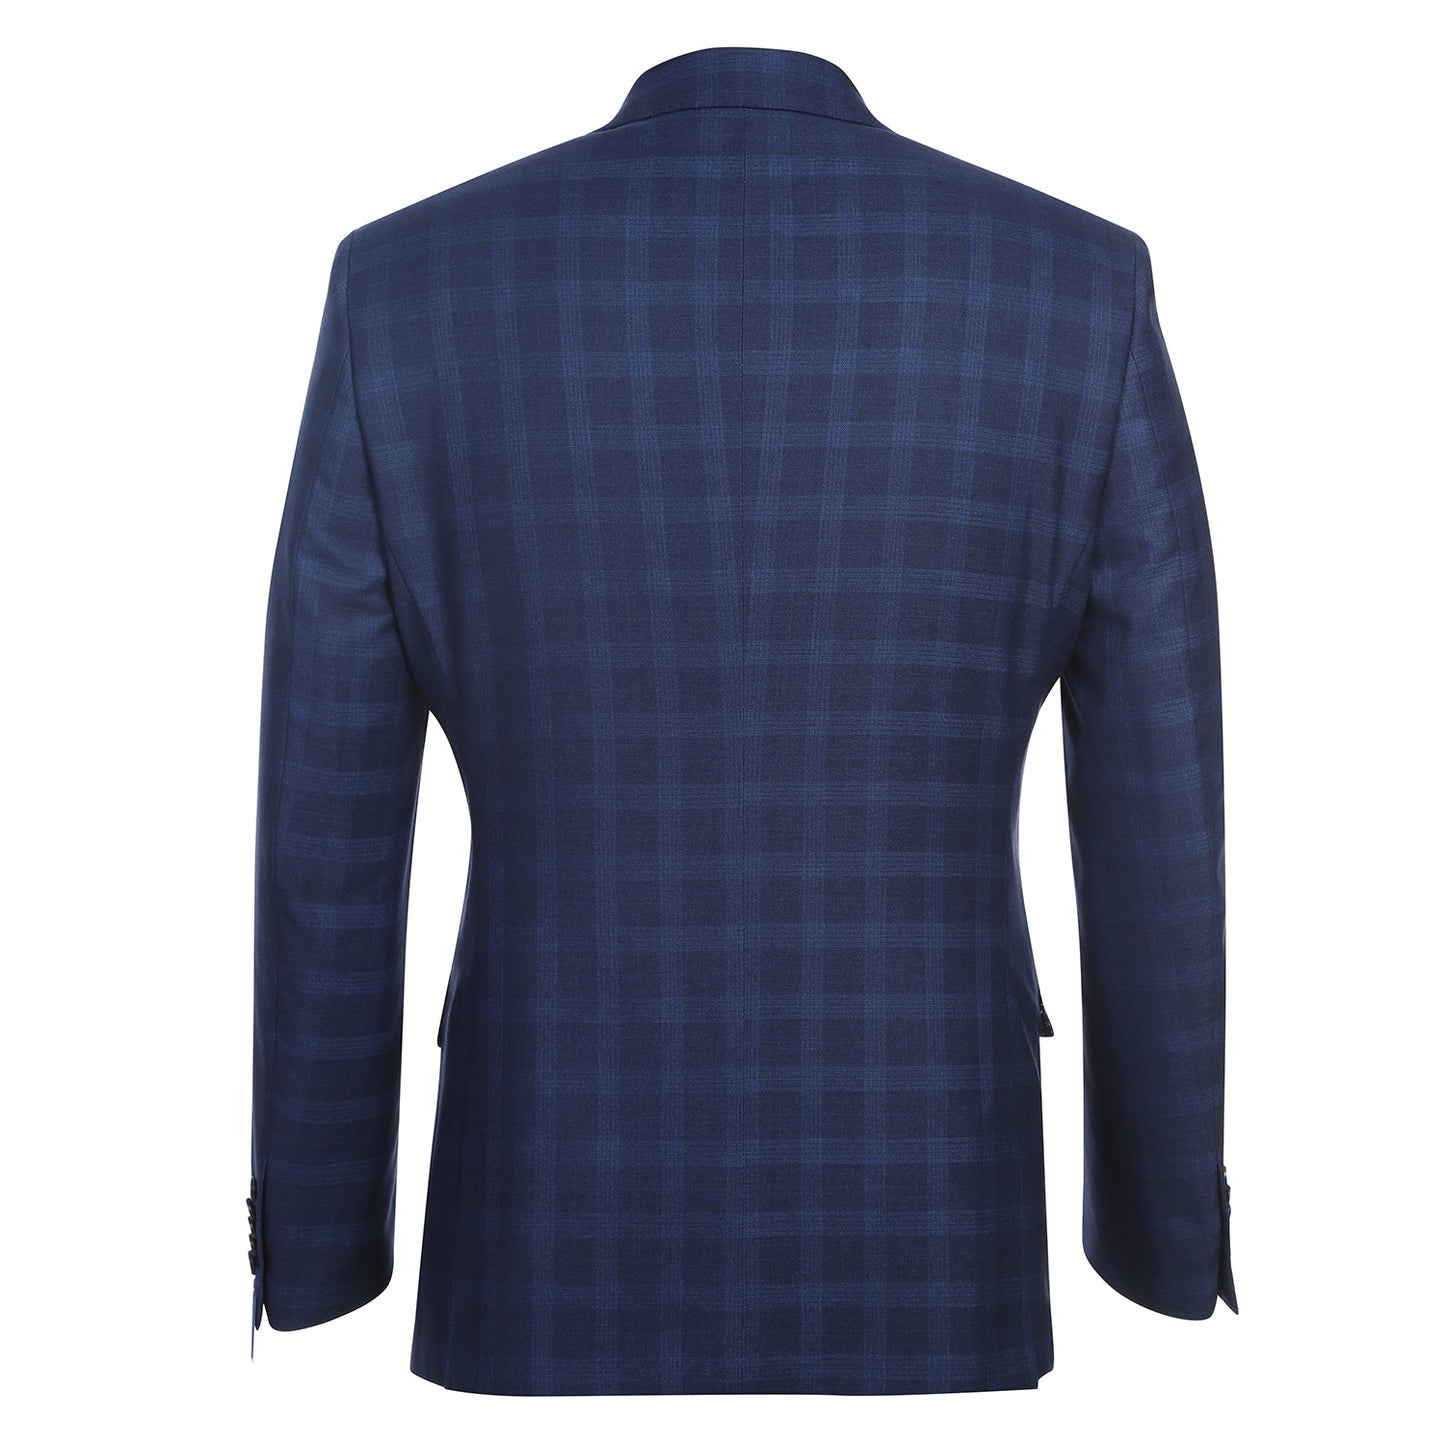 92-53-410EL Slim Fit English Laundry Navy Plaid Suit